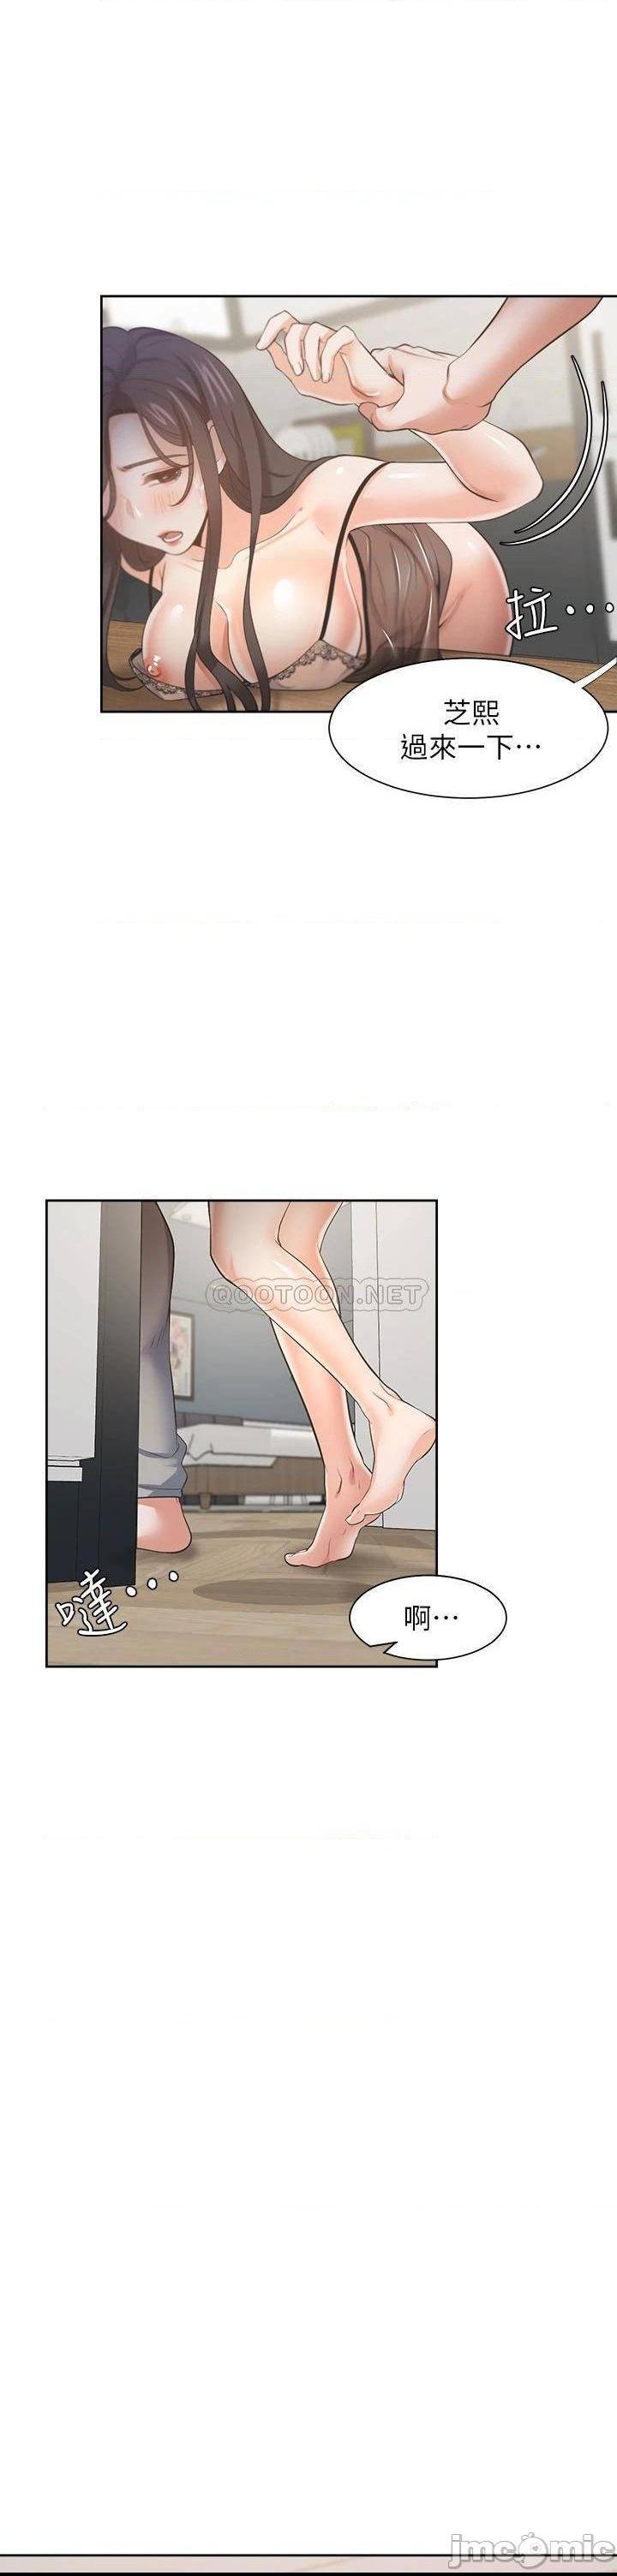 《渴望:爱火难耐》漫画 第68话 用身体发洩老婆外遇的愤怒